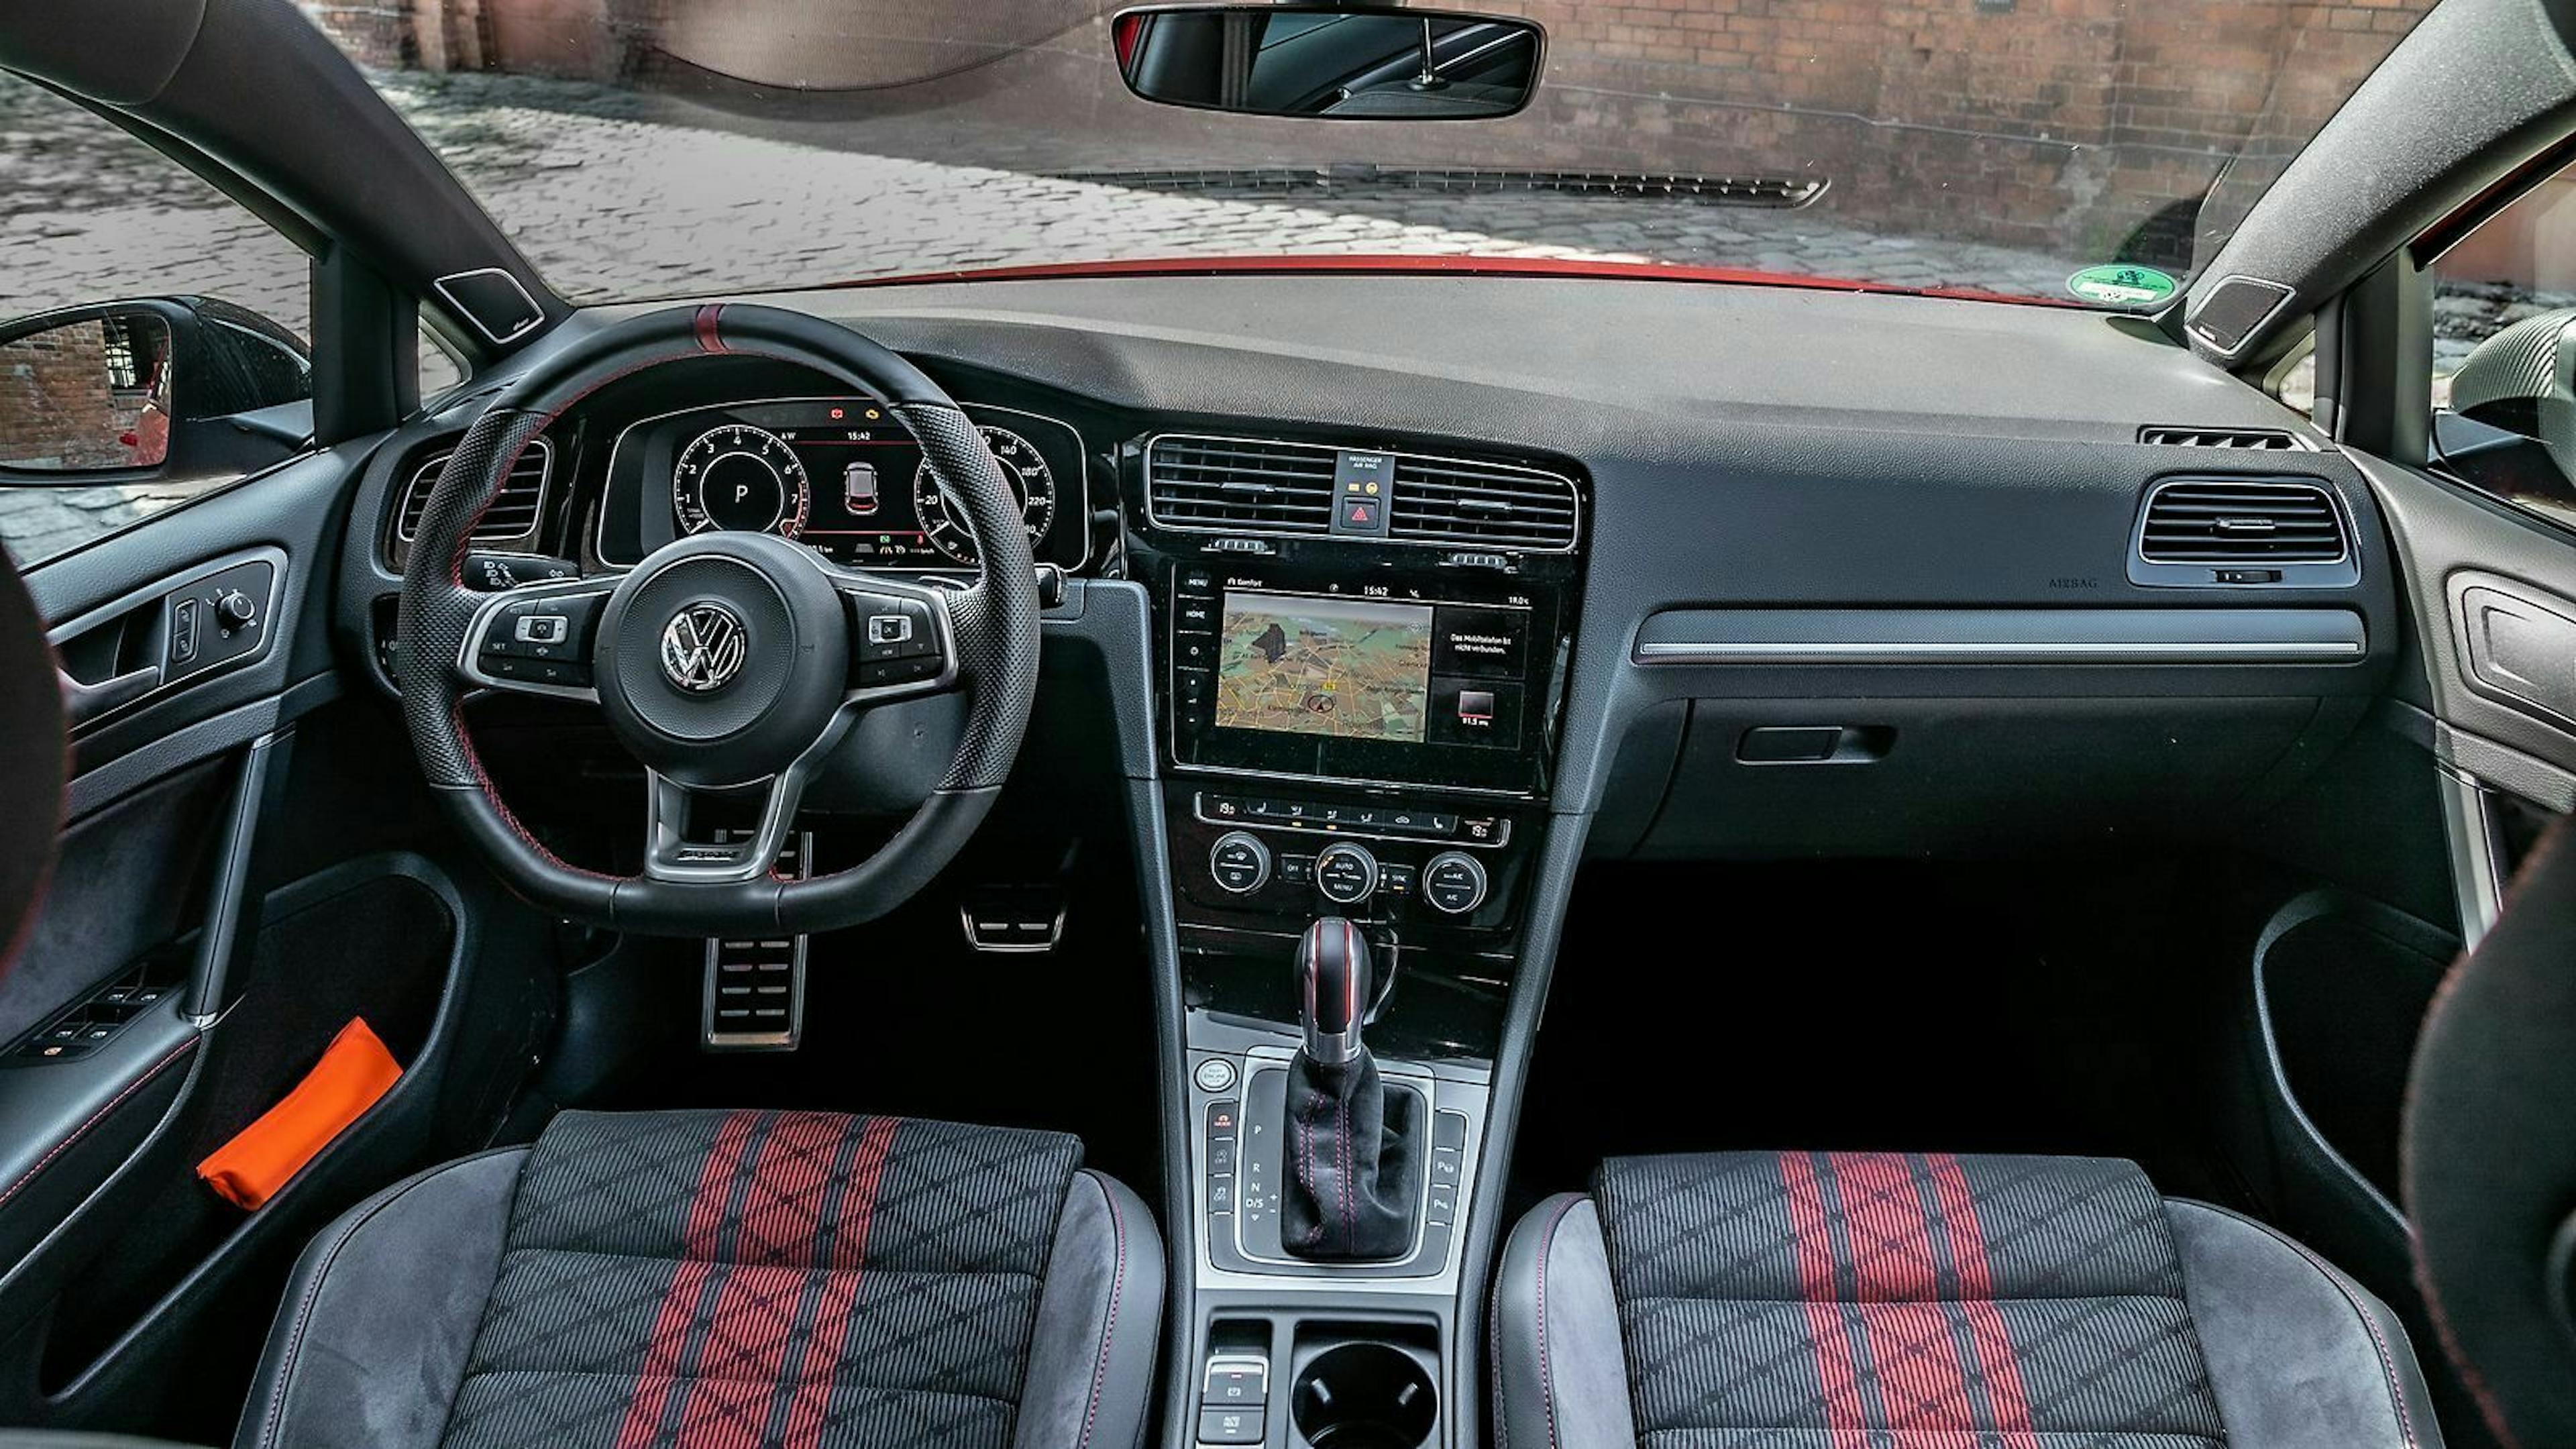 Zu sehen ist das Cockpit des VW Golf 7 GTI TCR